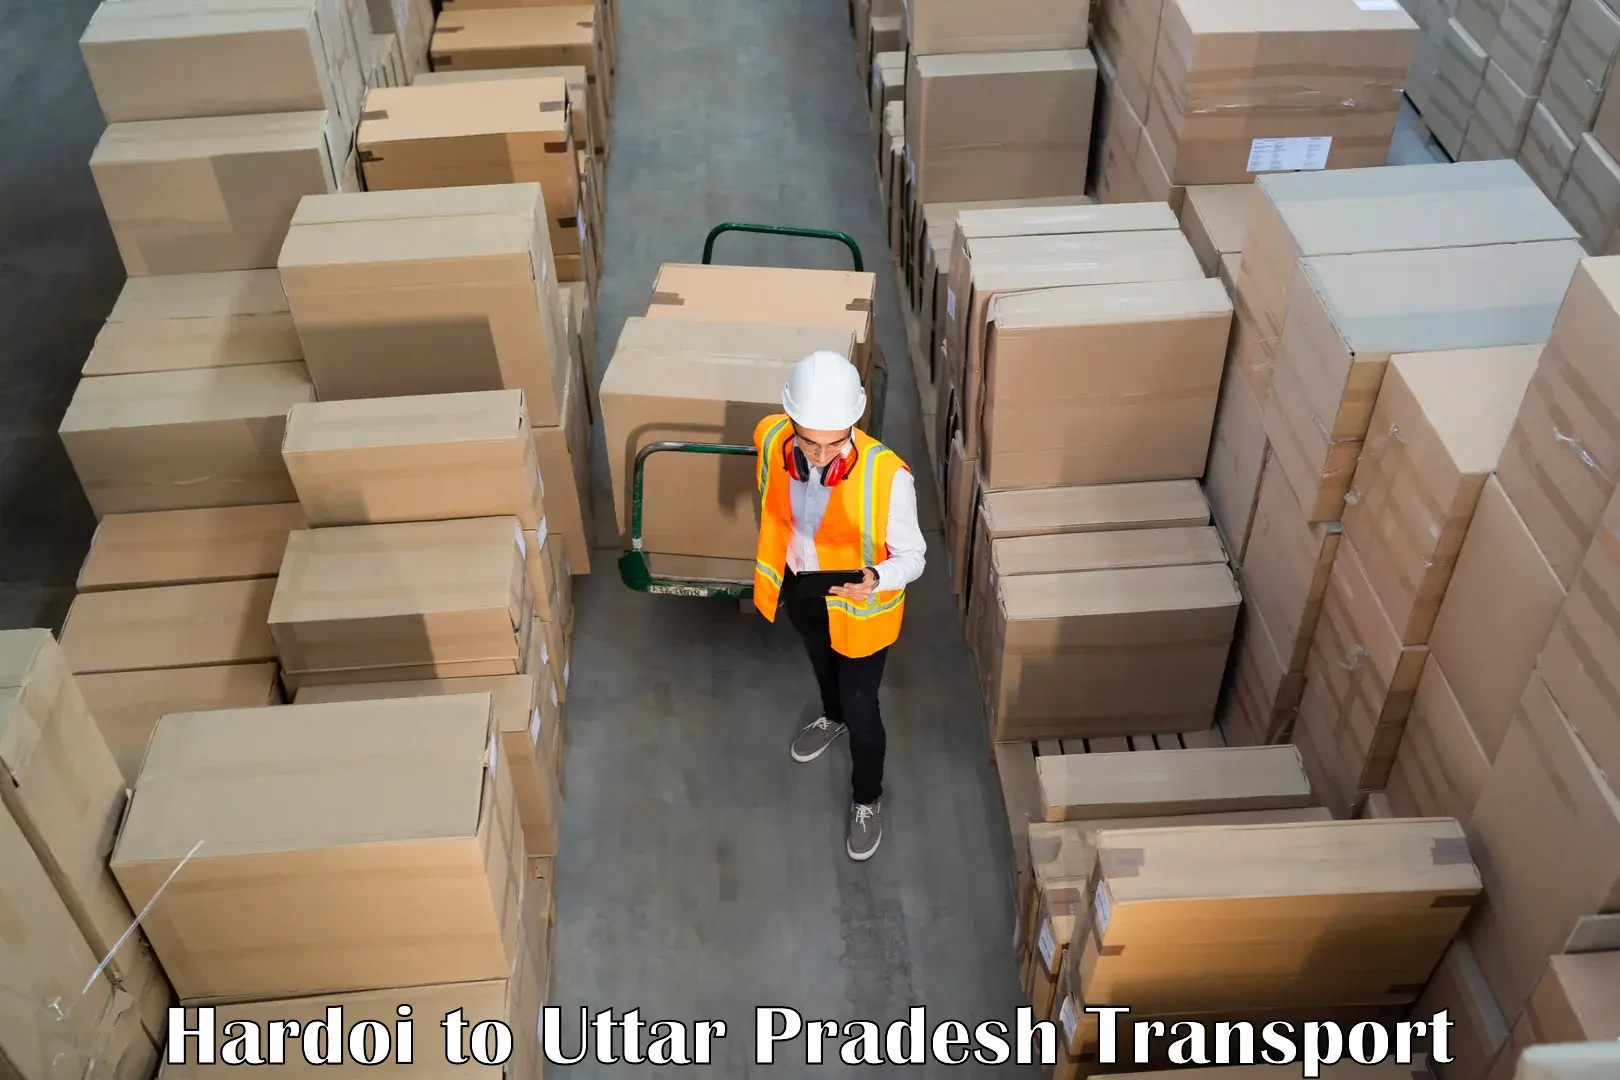 Shipping partner Hardoi to Kheragarh